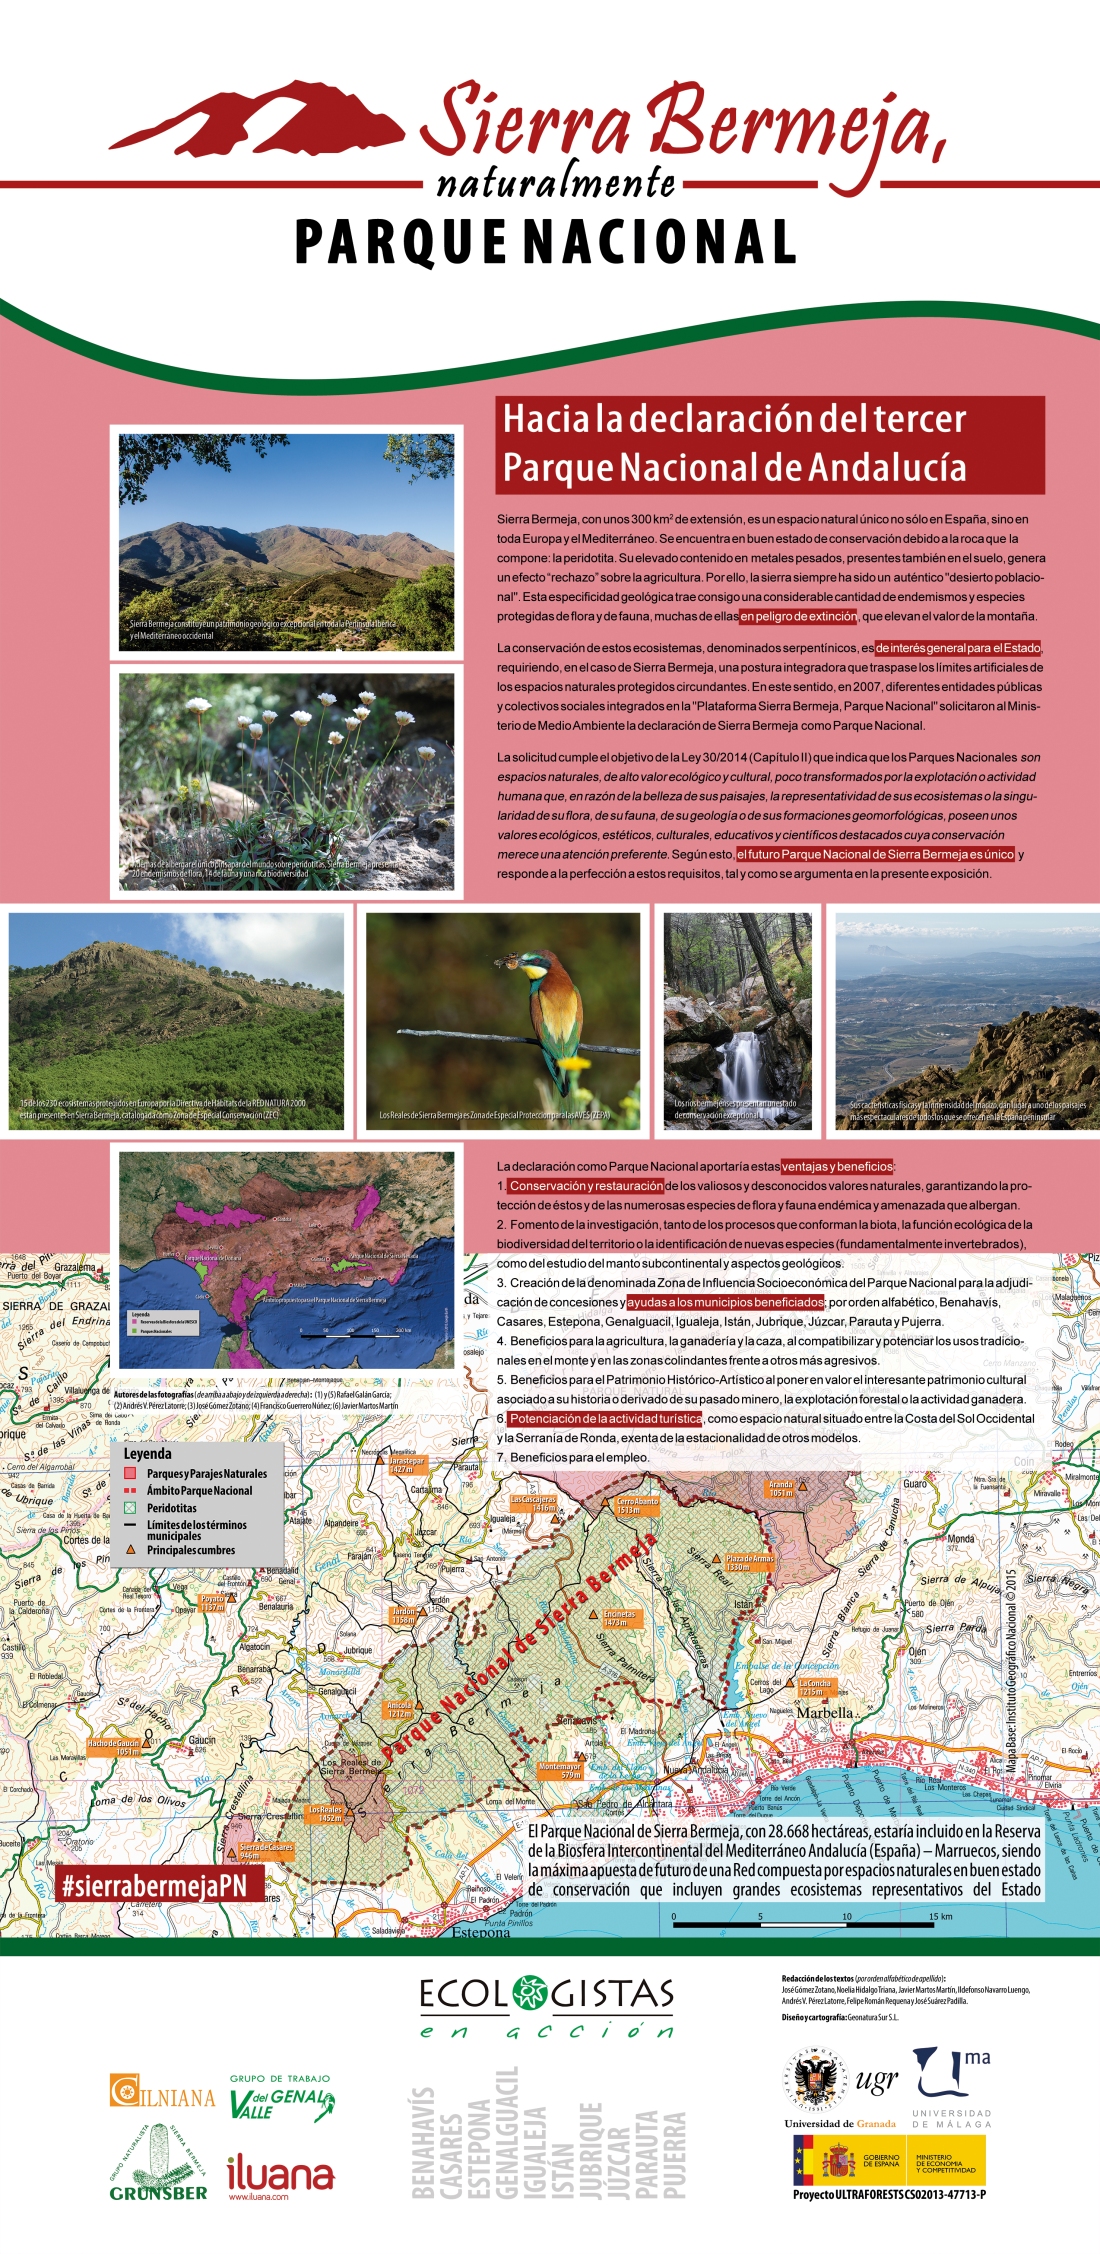 1. Hacia la declaración del tercer Parque Nacional de Andalucía